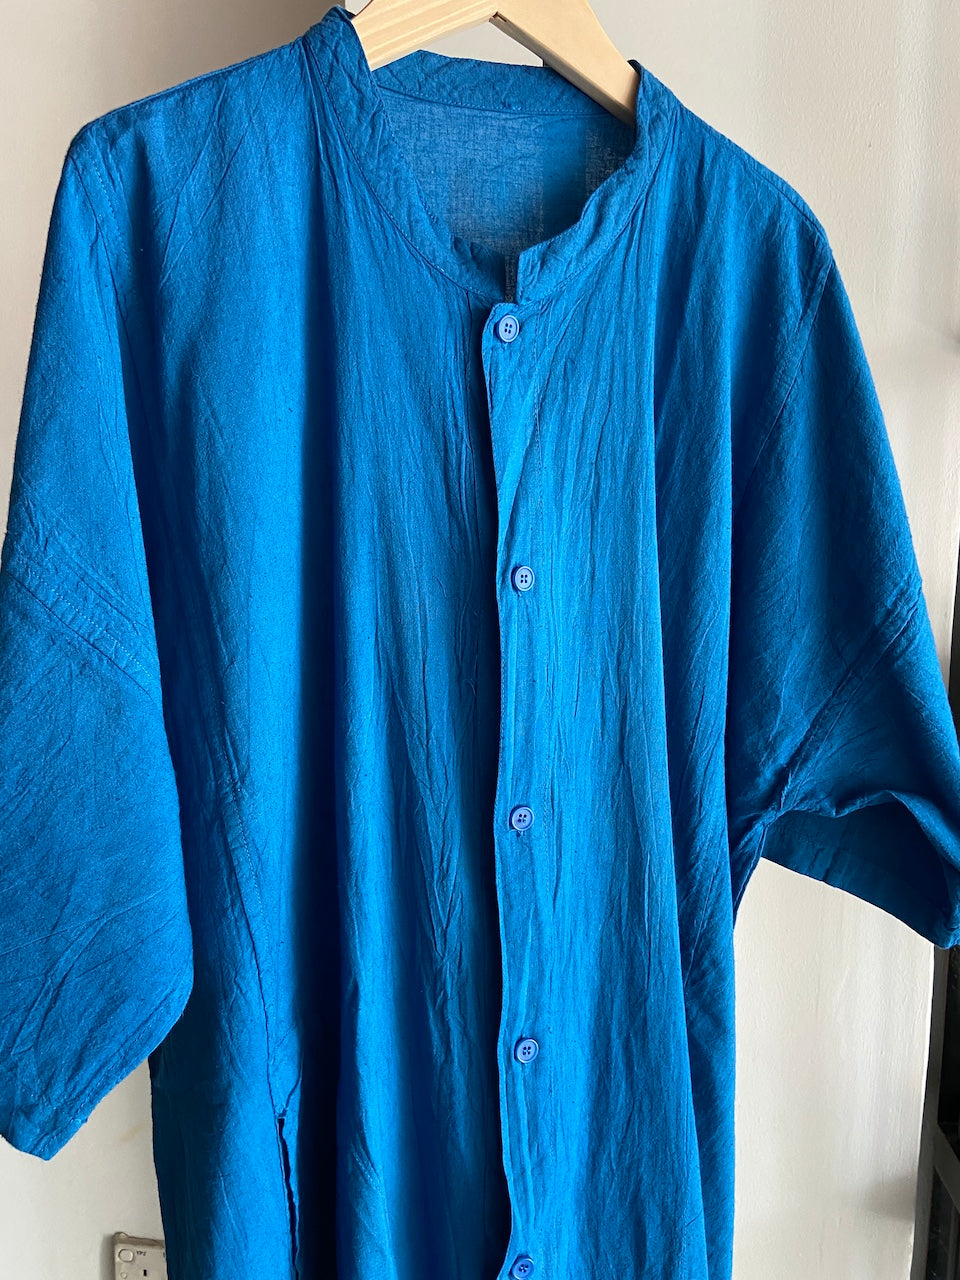 Hand-dyed Button Shirt (Blue)